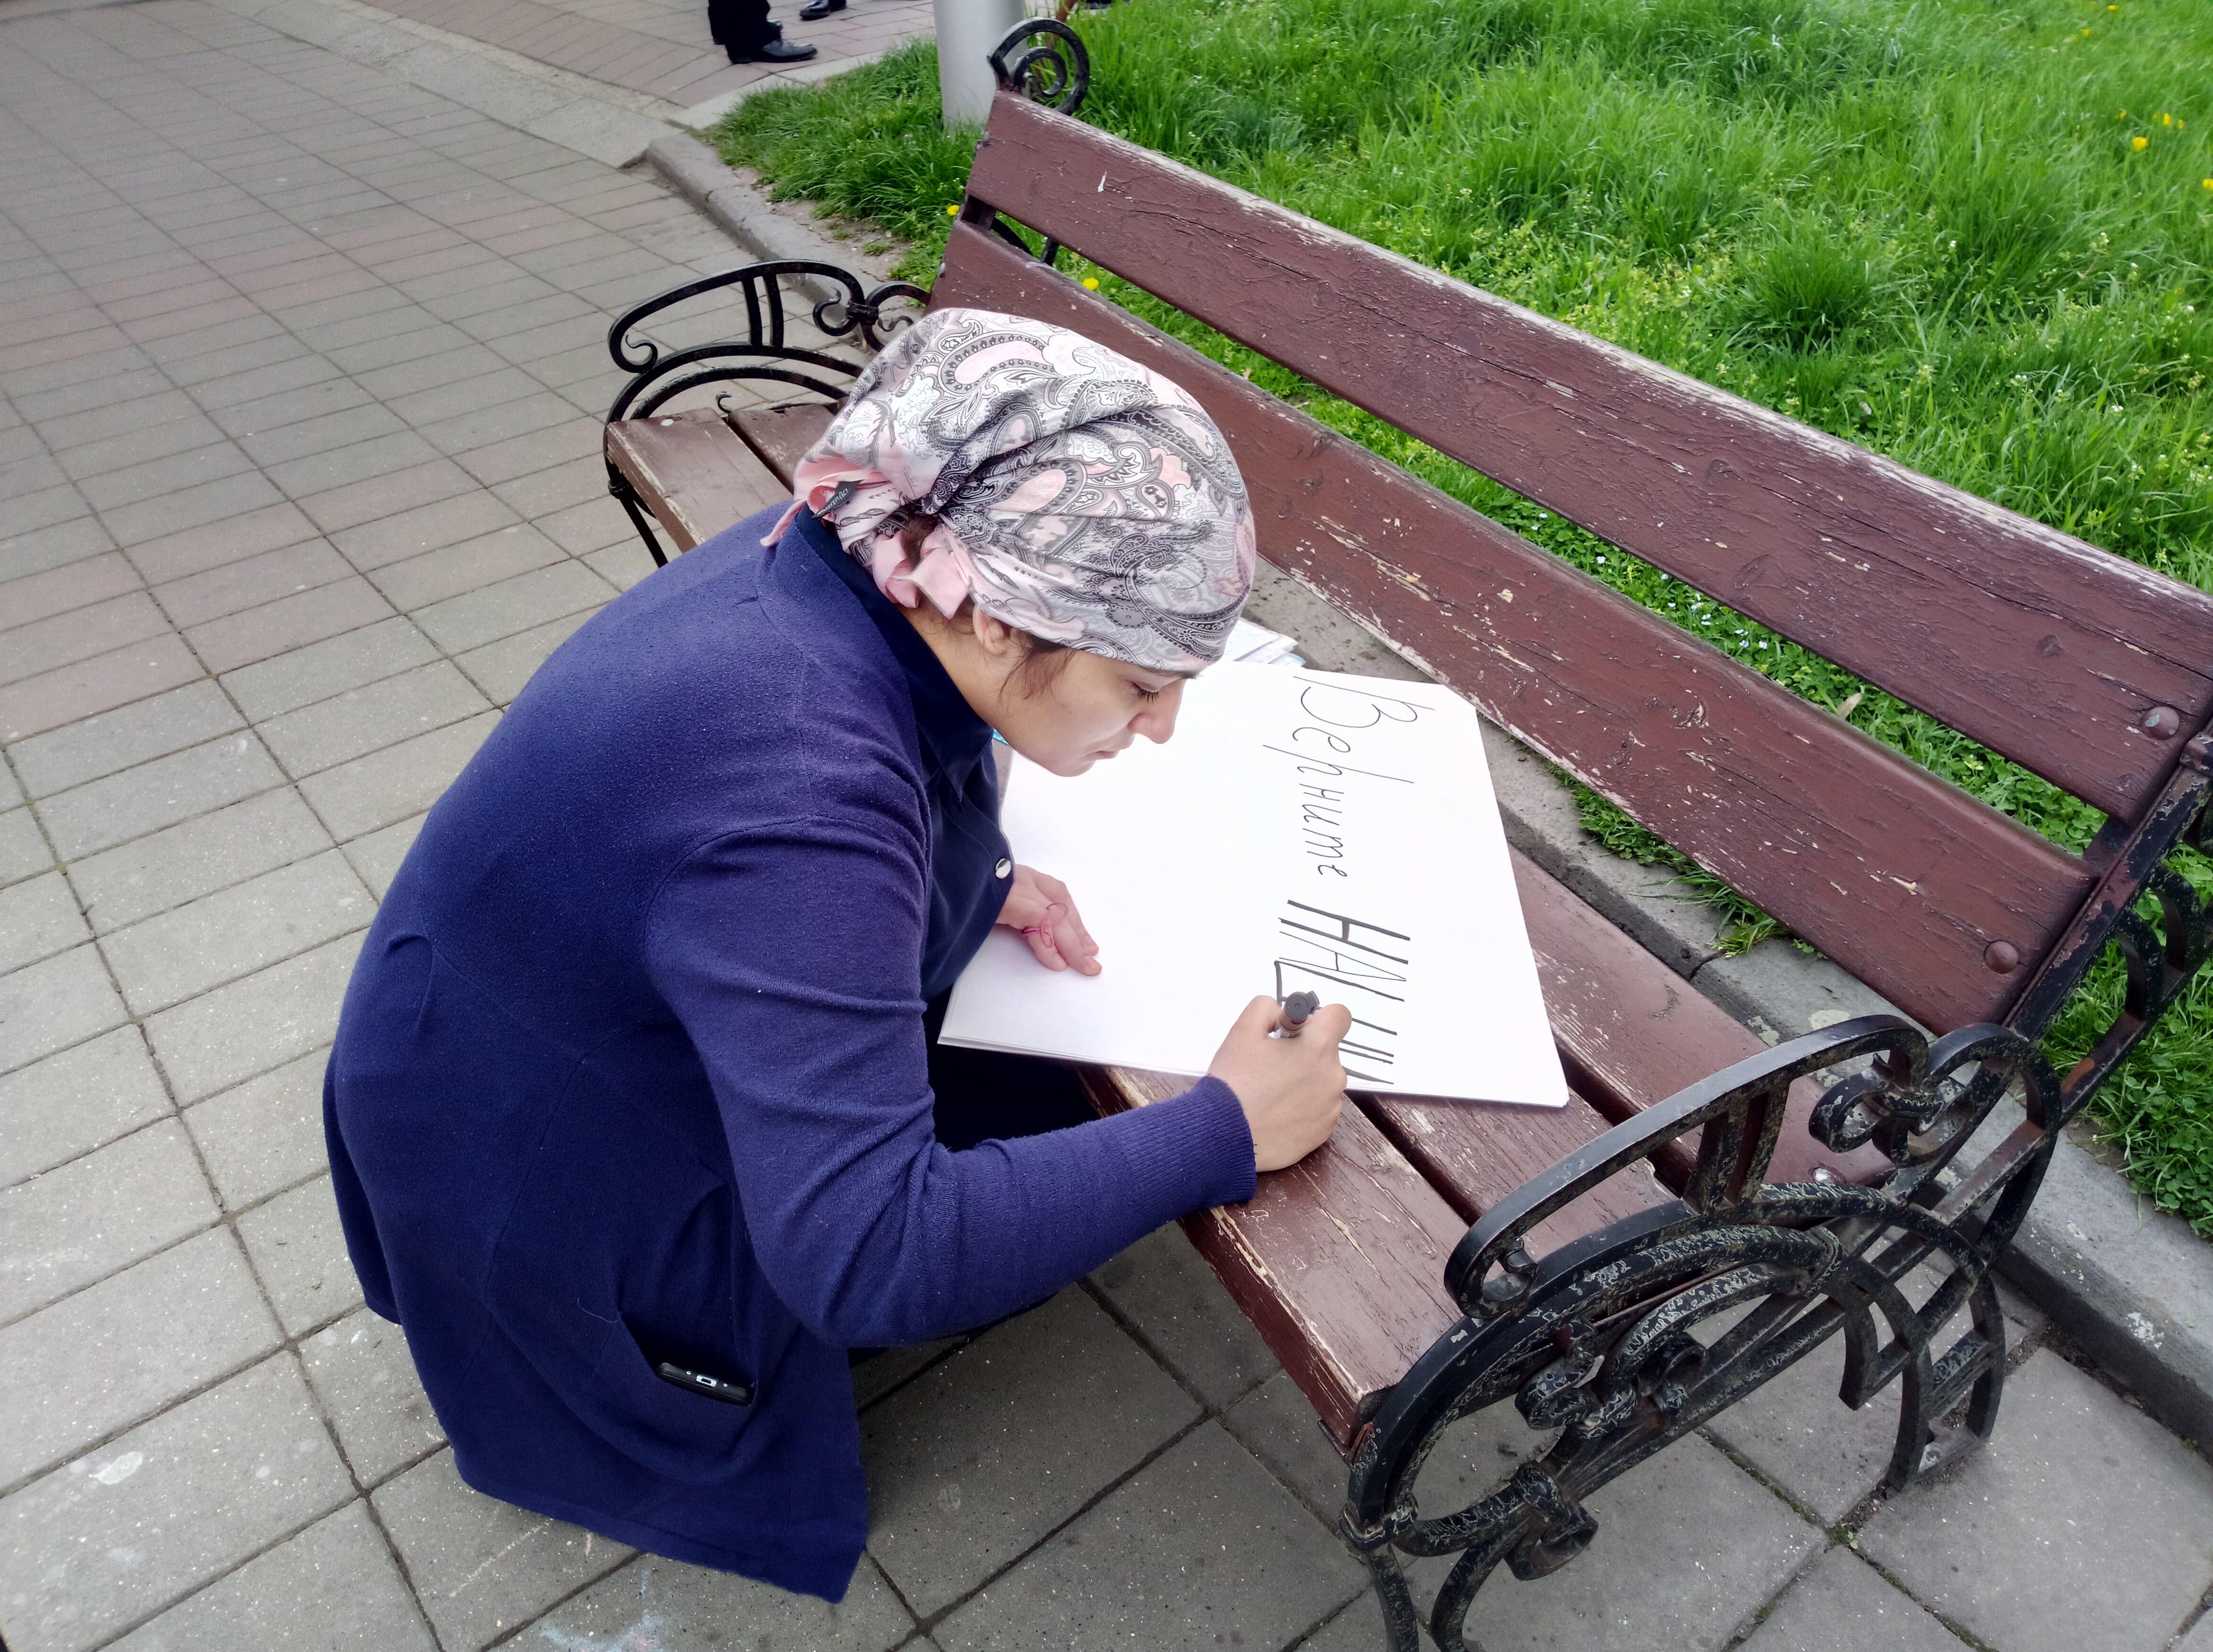 Жительница Второго Лескена готовит плакат для пикета в Нальчике 16 апреля 2019 года. Фото Людмилы Маратовой для "Кавказского узла"